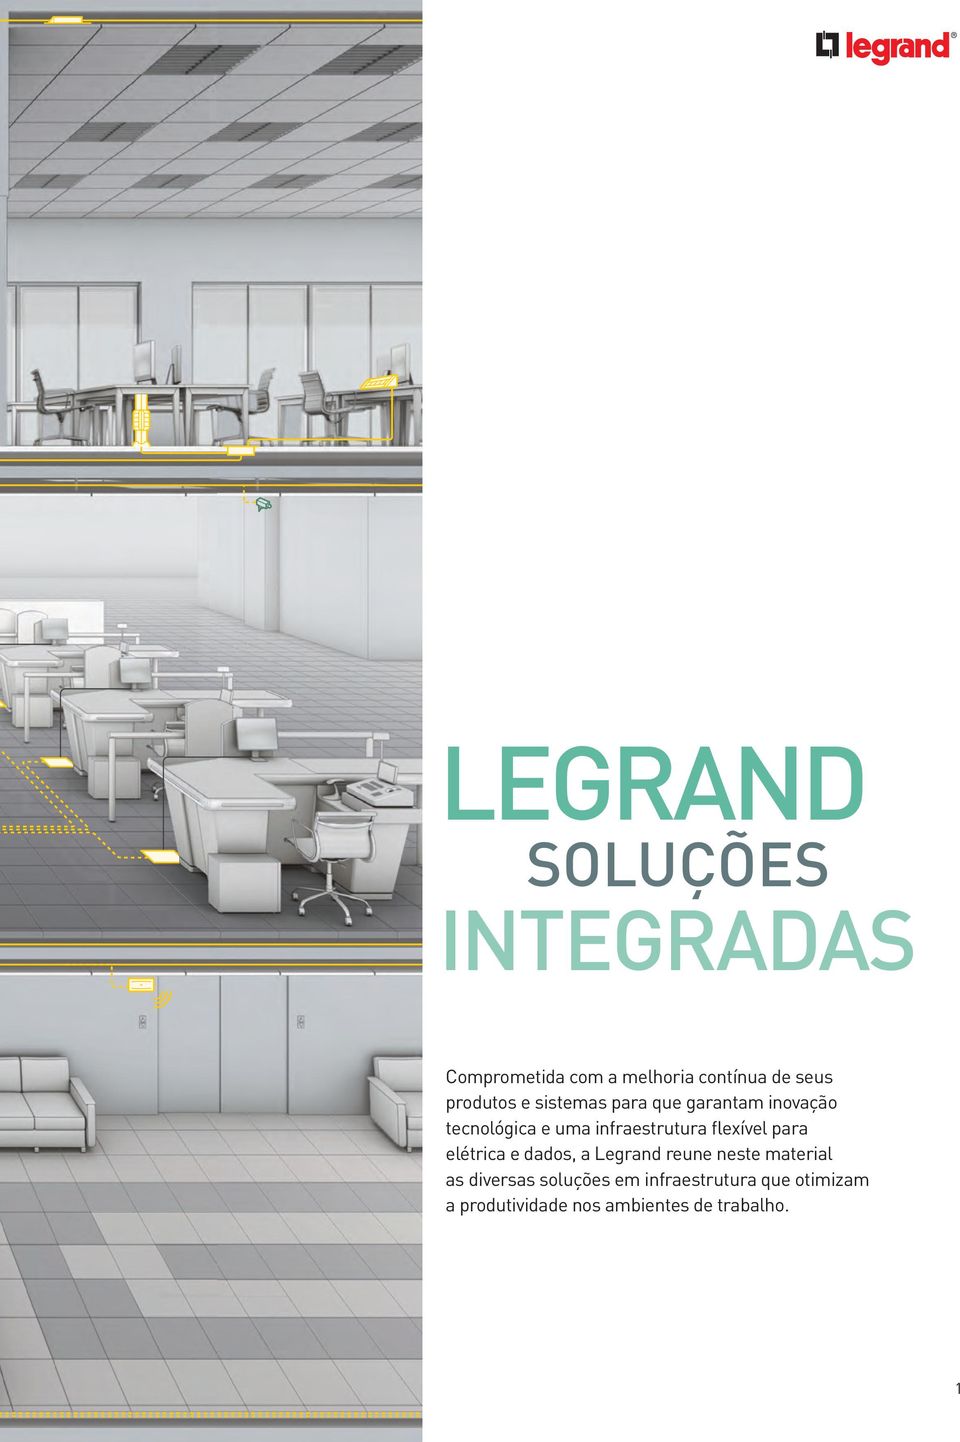 infraestrutura flexível para elétrica e dados, a Legrand reune neste material